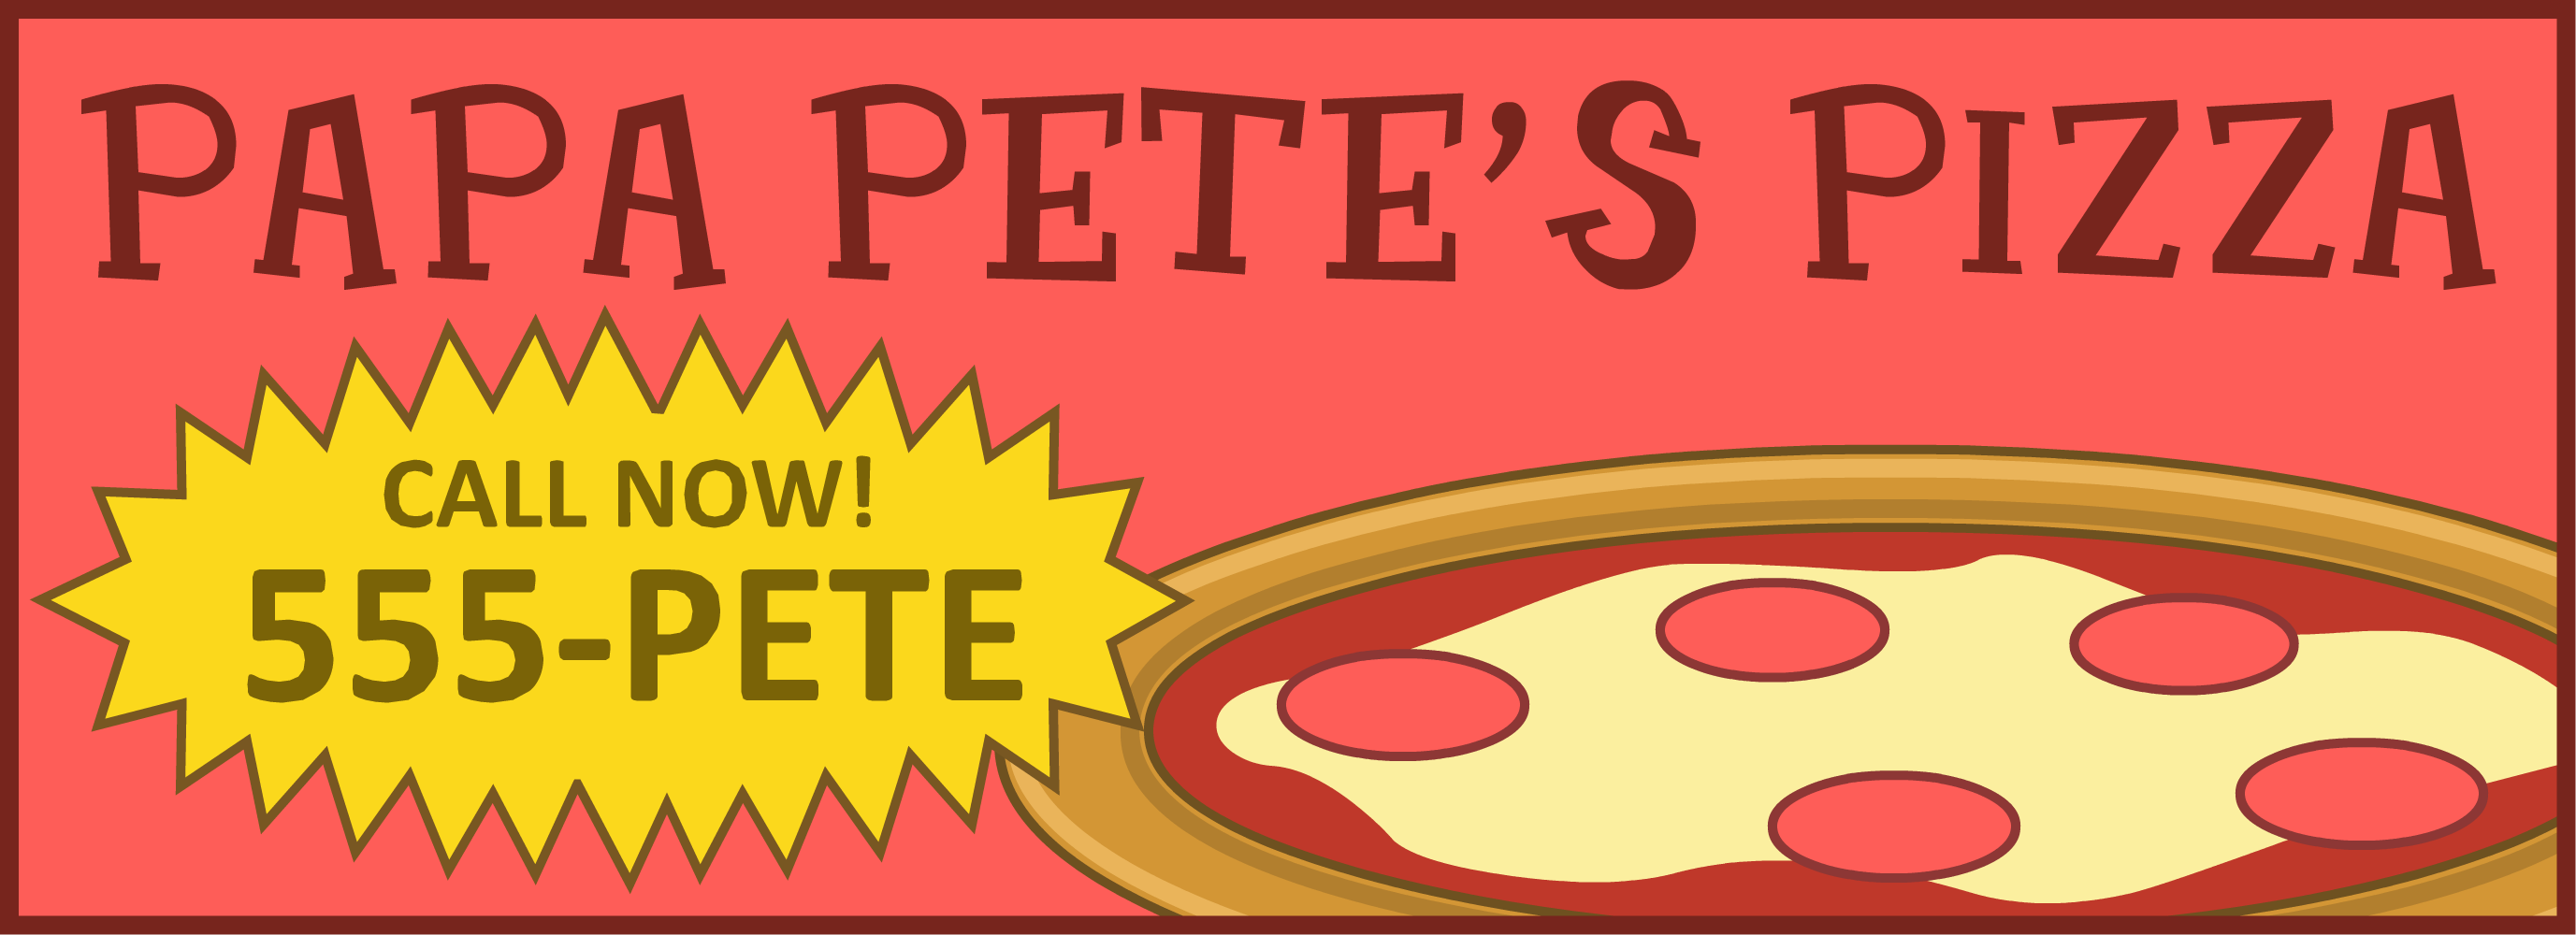 Papa Pete S Pizza Poptropica Wiki Fandom